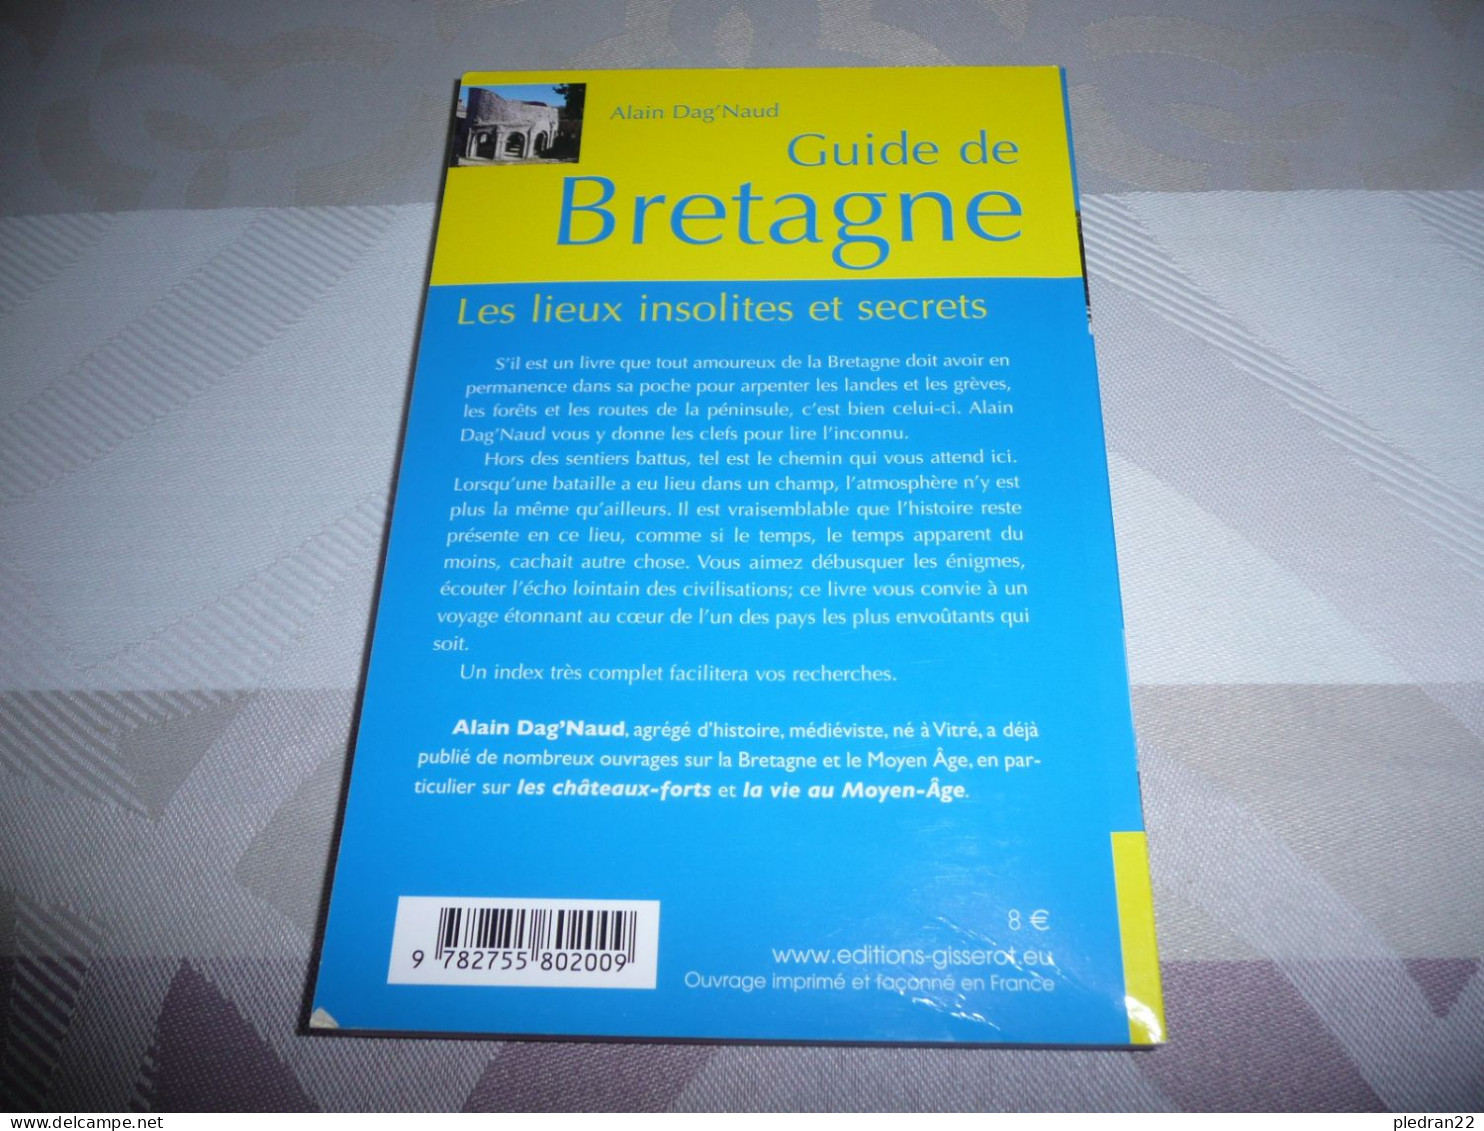 ALAIN DAG'NAUD GUIDE DE BRETAGNE LES LIEUX INSOLITES ET SECRETS EDITIONS GISSEROT 2011 - Bretagne